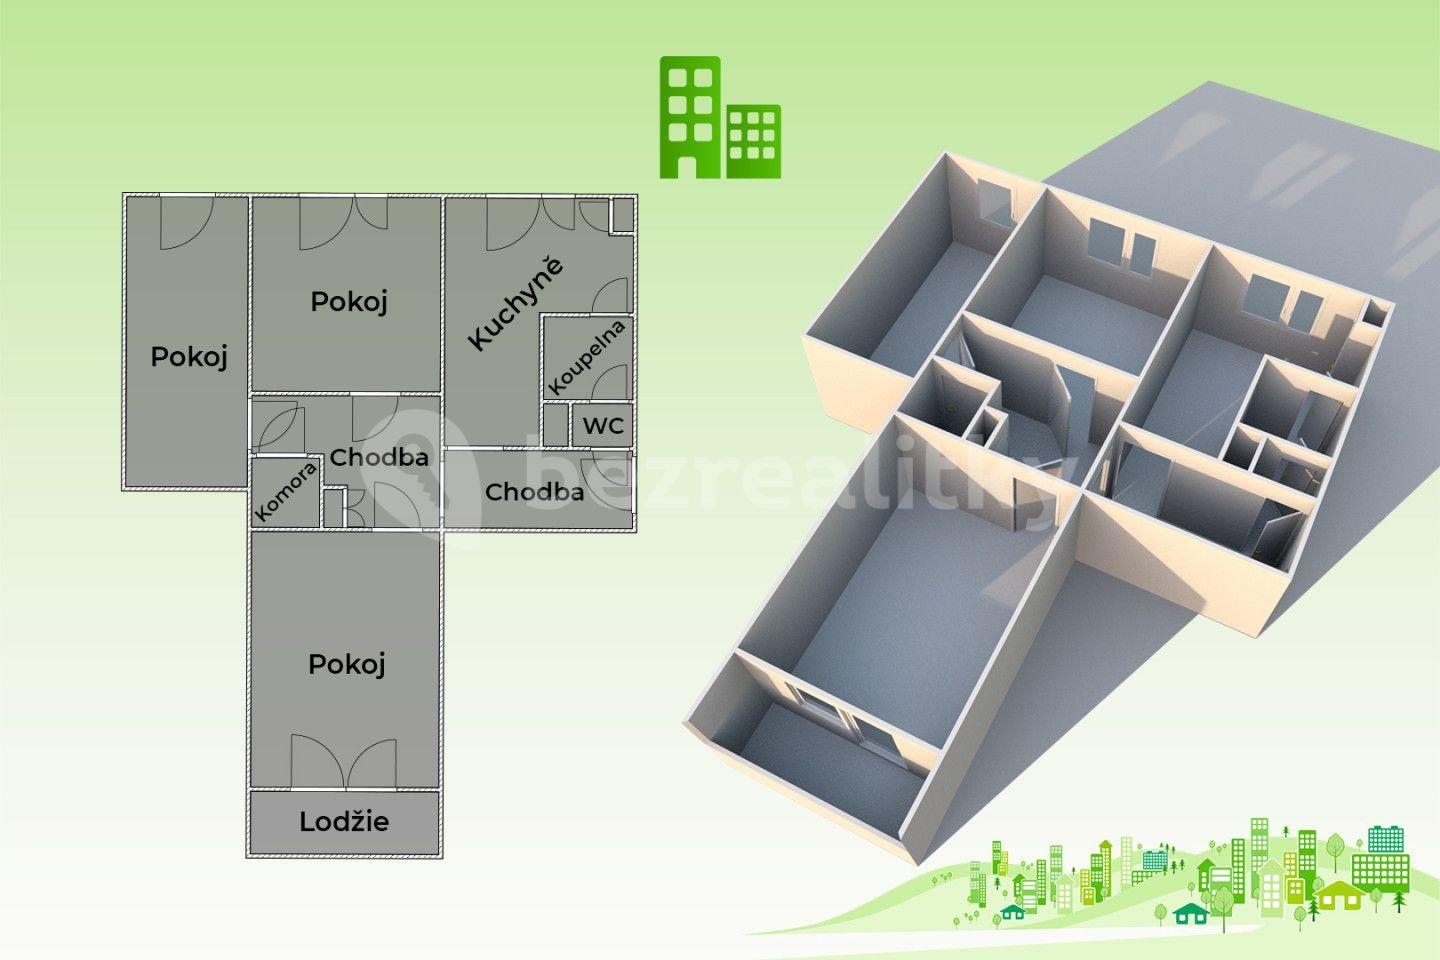 3 bedroom flat for sale, 66 m², Husova, Valašské Meziříčí, Zlínský Region